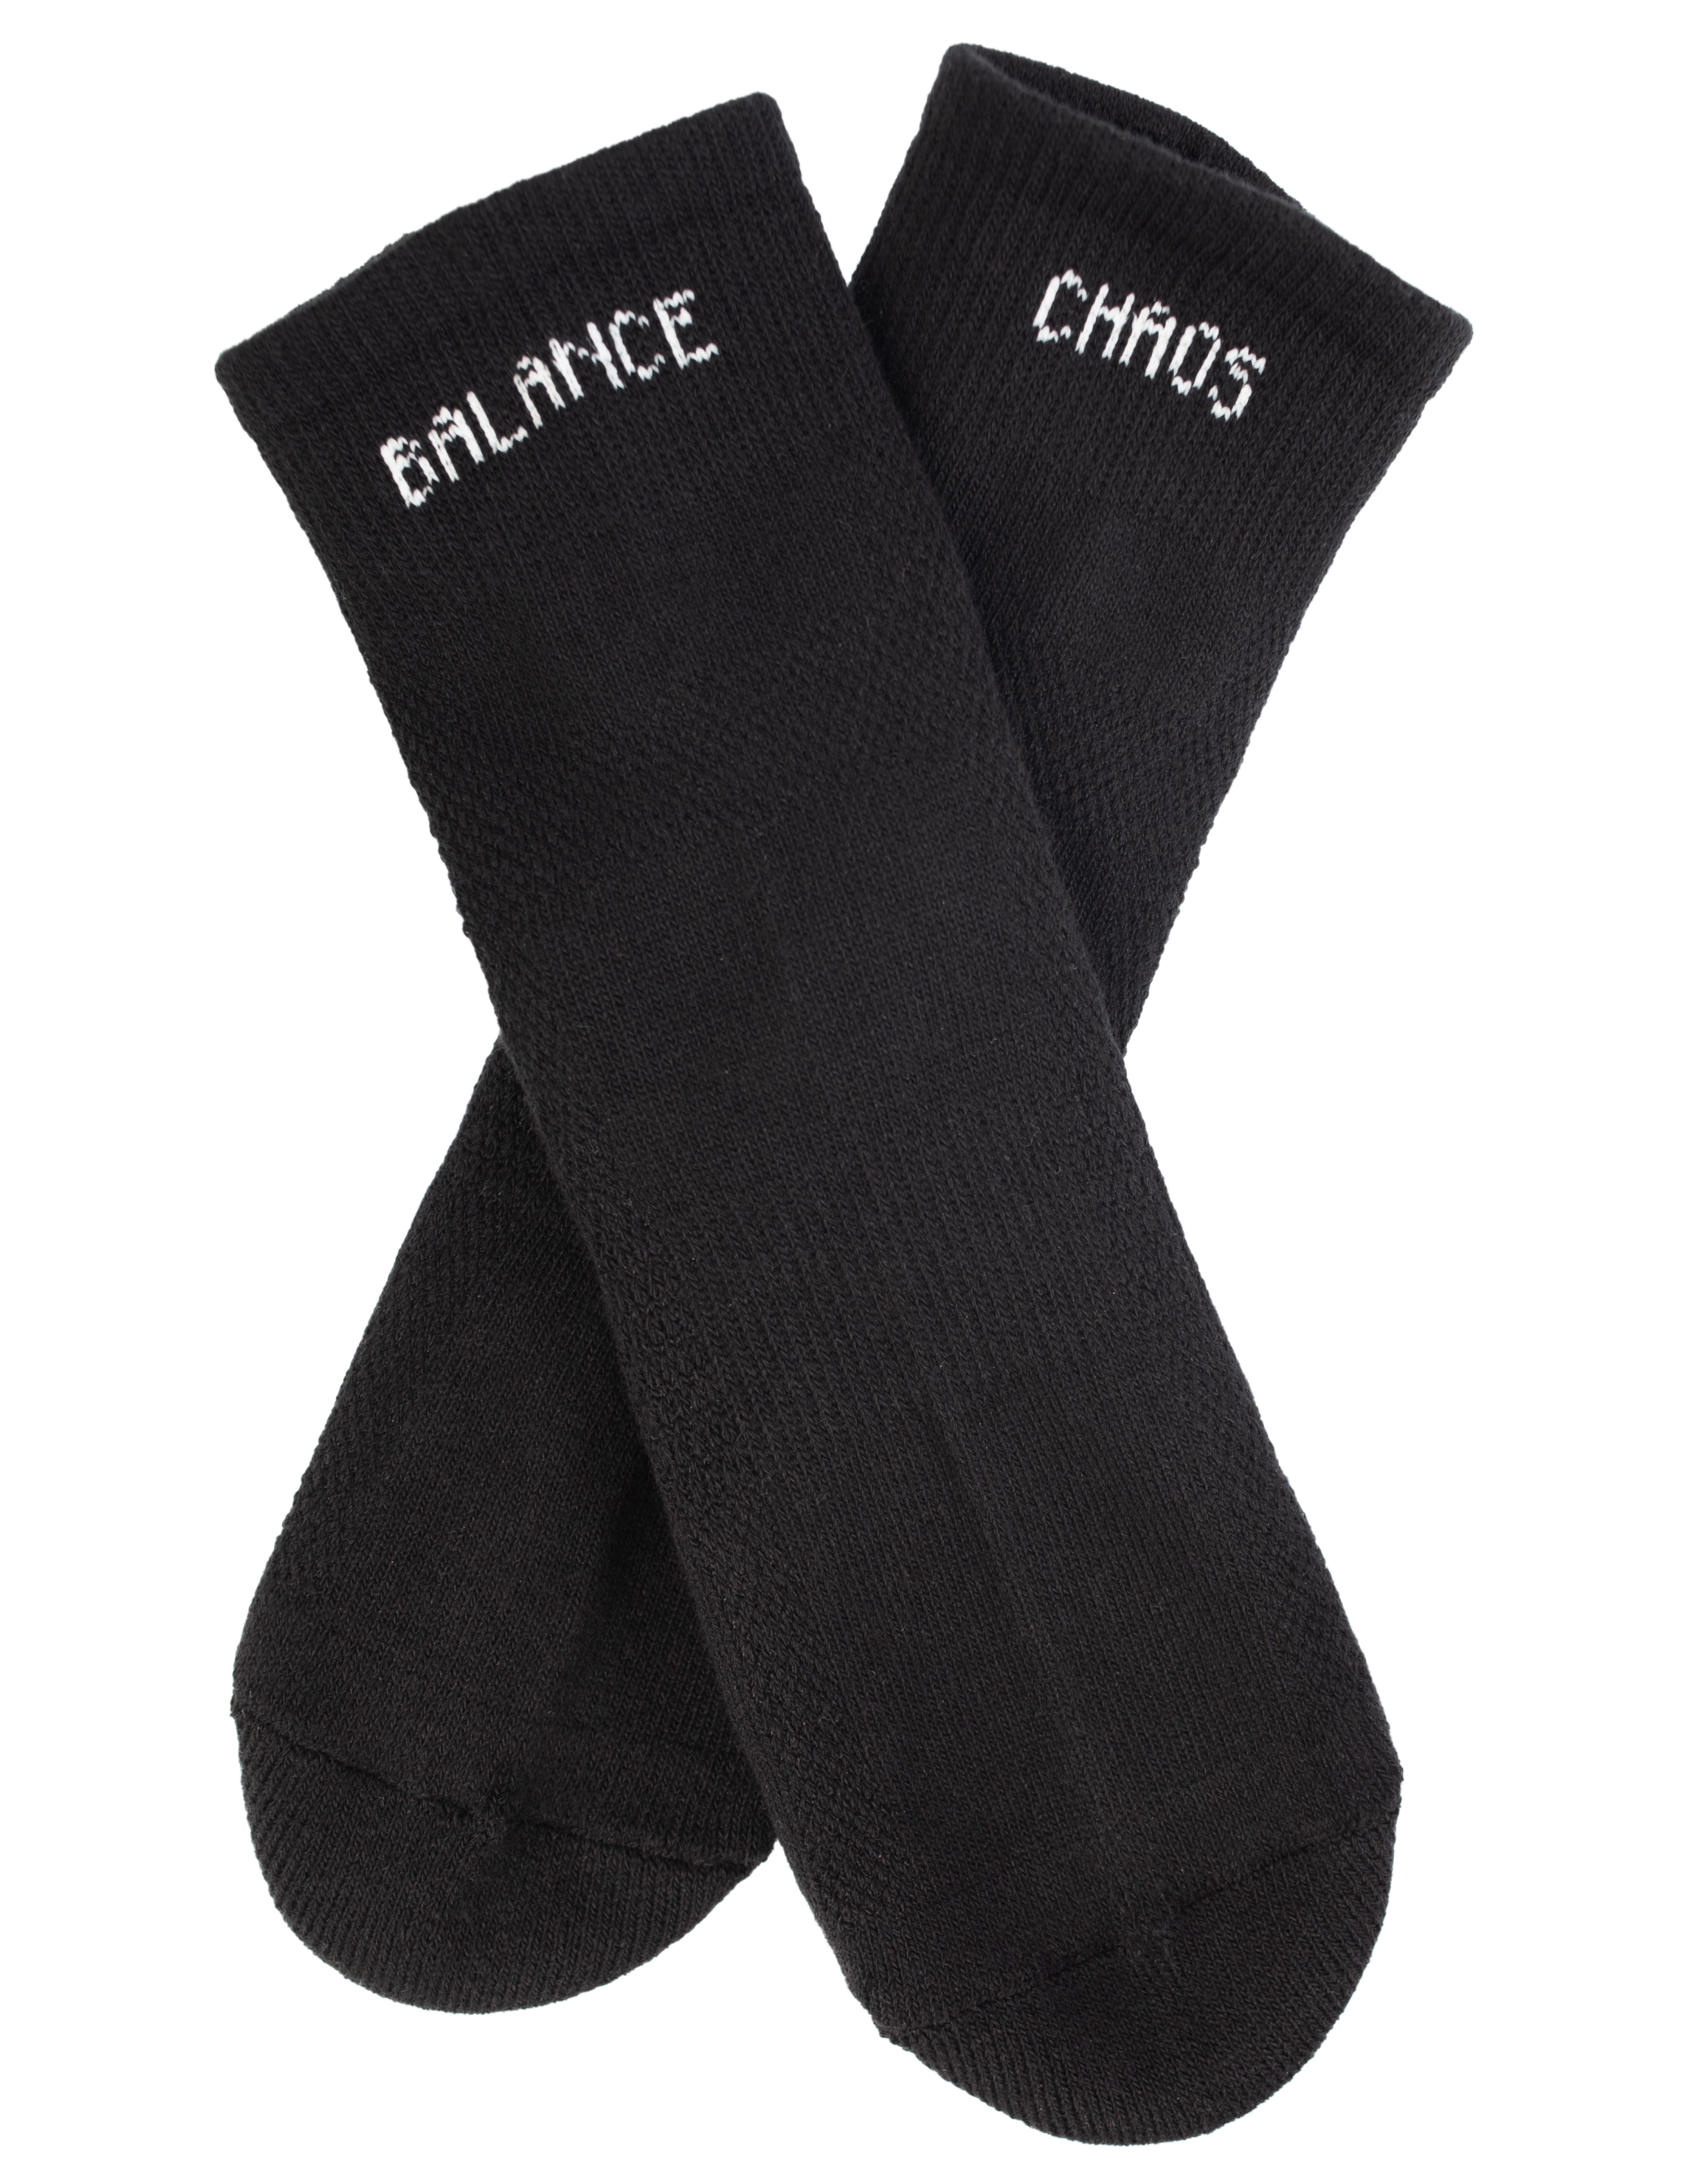 Черные носки Chaos Balance Undercover UC1B4L03/blk, размер One Size UC1B4L03/blk - фото 2